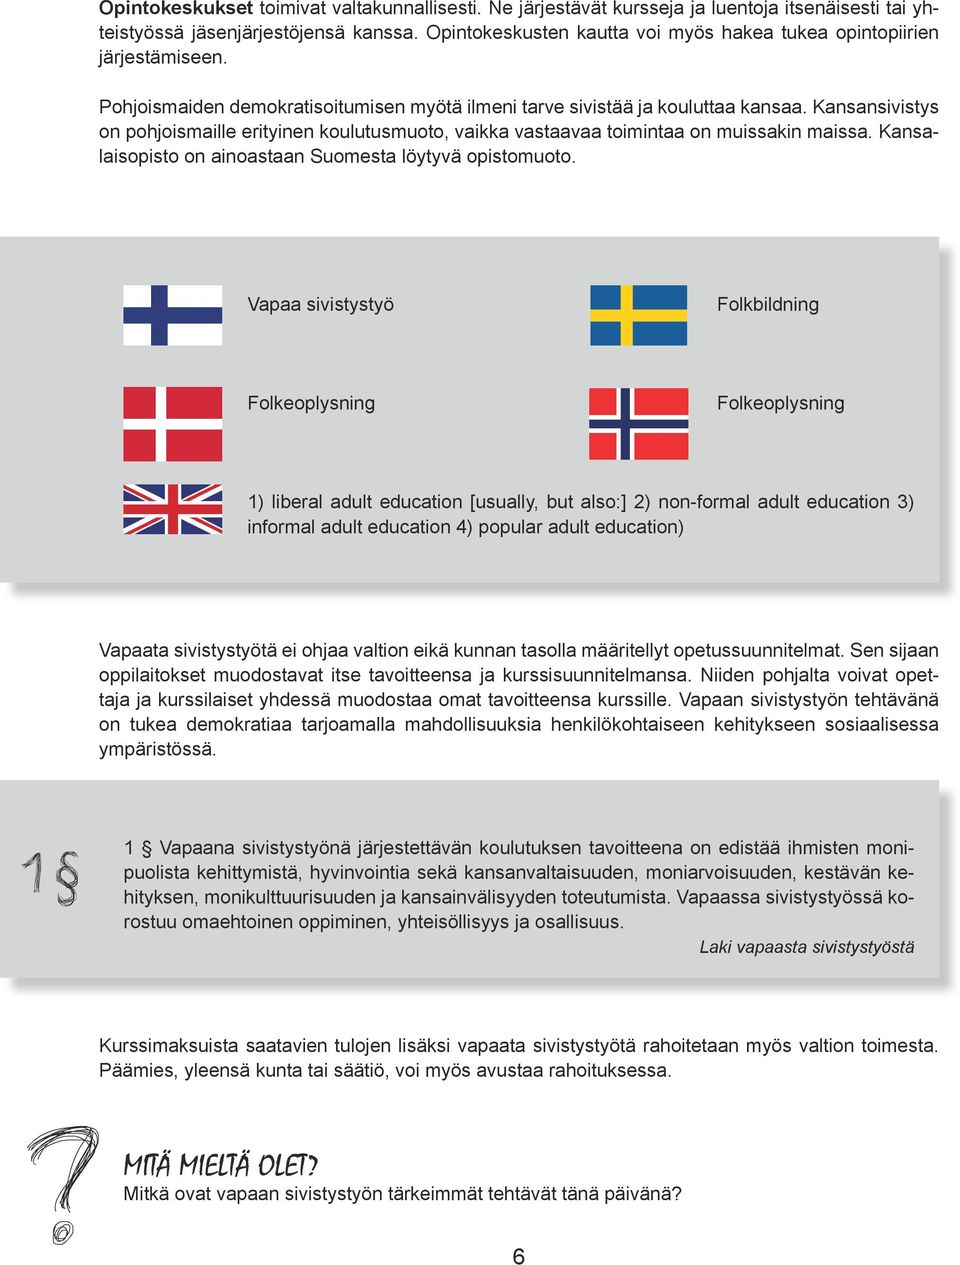 Kansansivistys on pohjoismaille erityinen koulutusmuoto, vaikka vastaavaa toimintaa on muissakin maissa. Kansalaisopisto on ainoastaan Suomesta löytyvä opistomuoto.